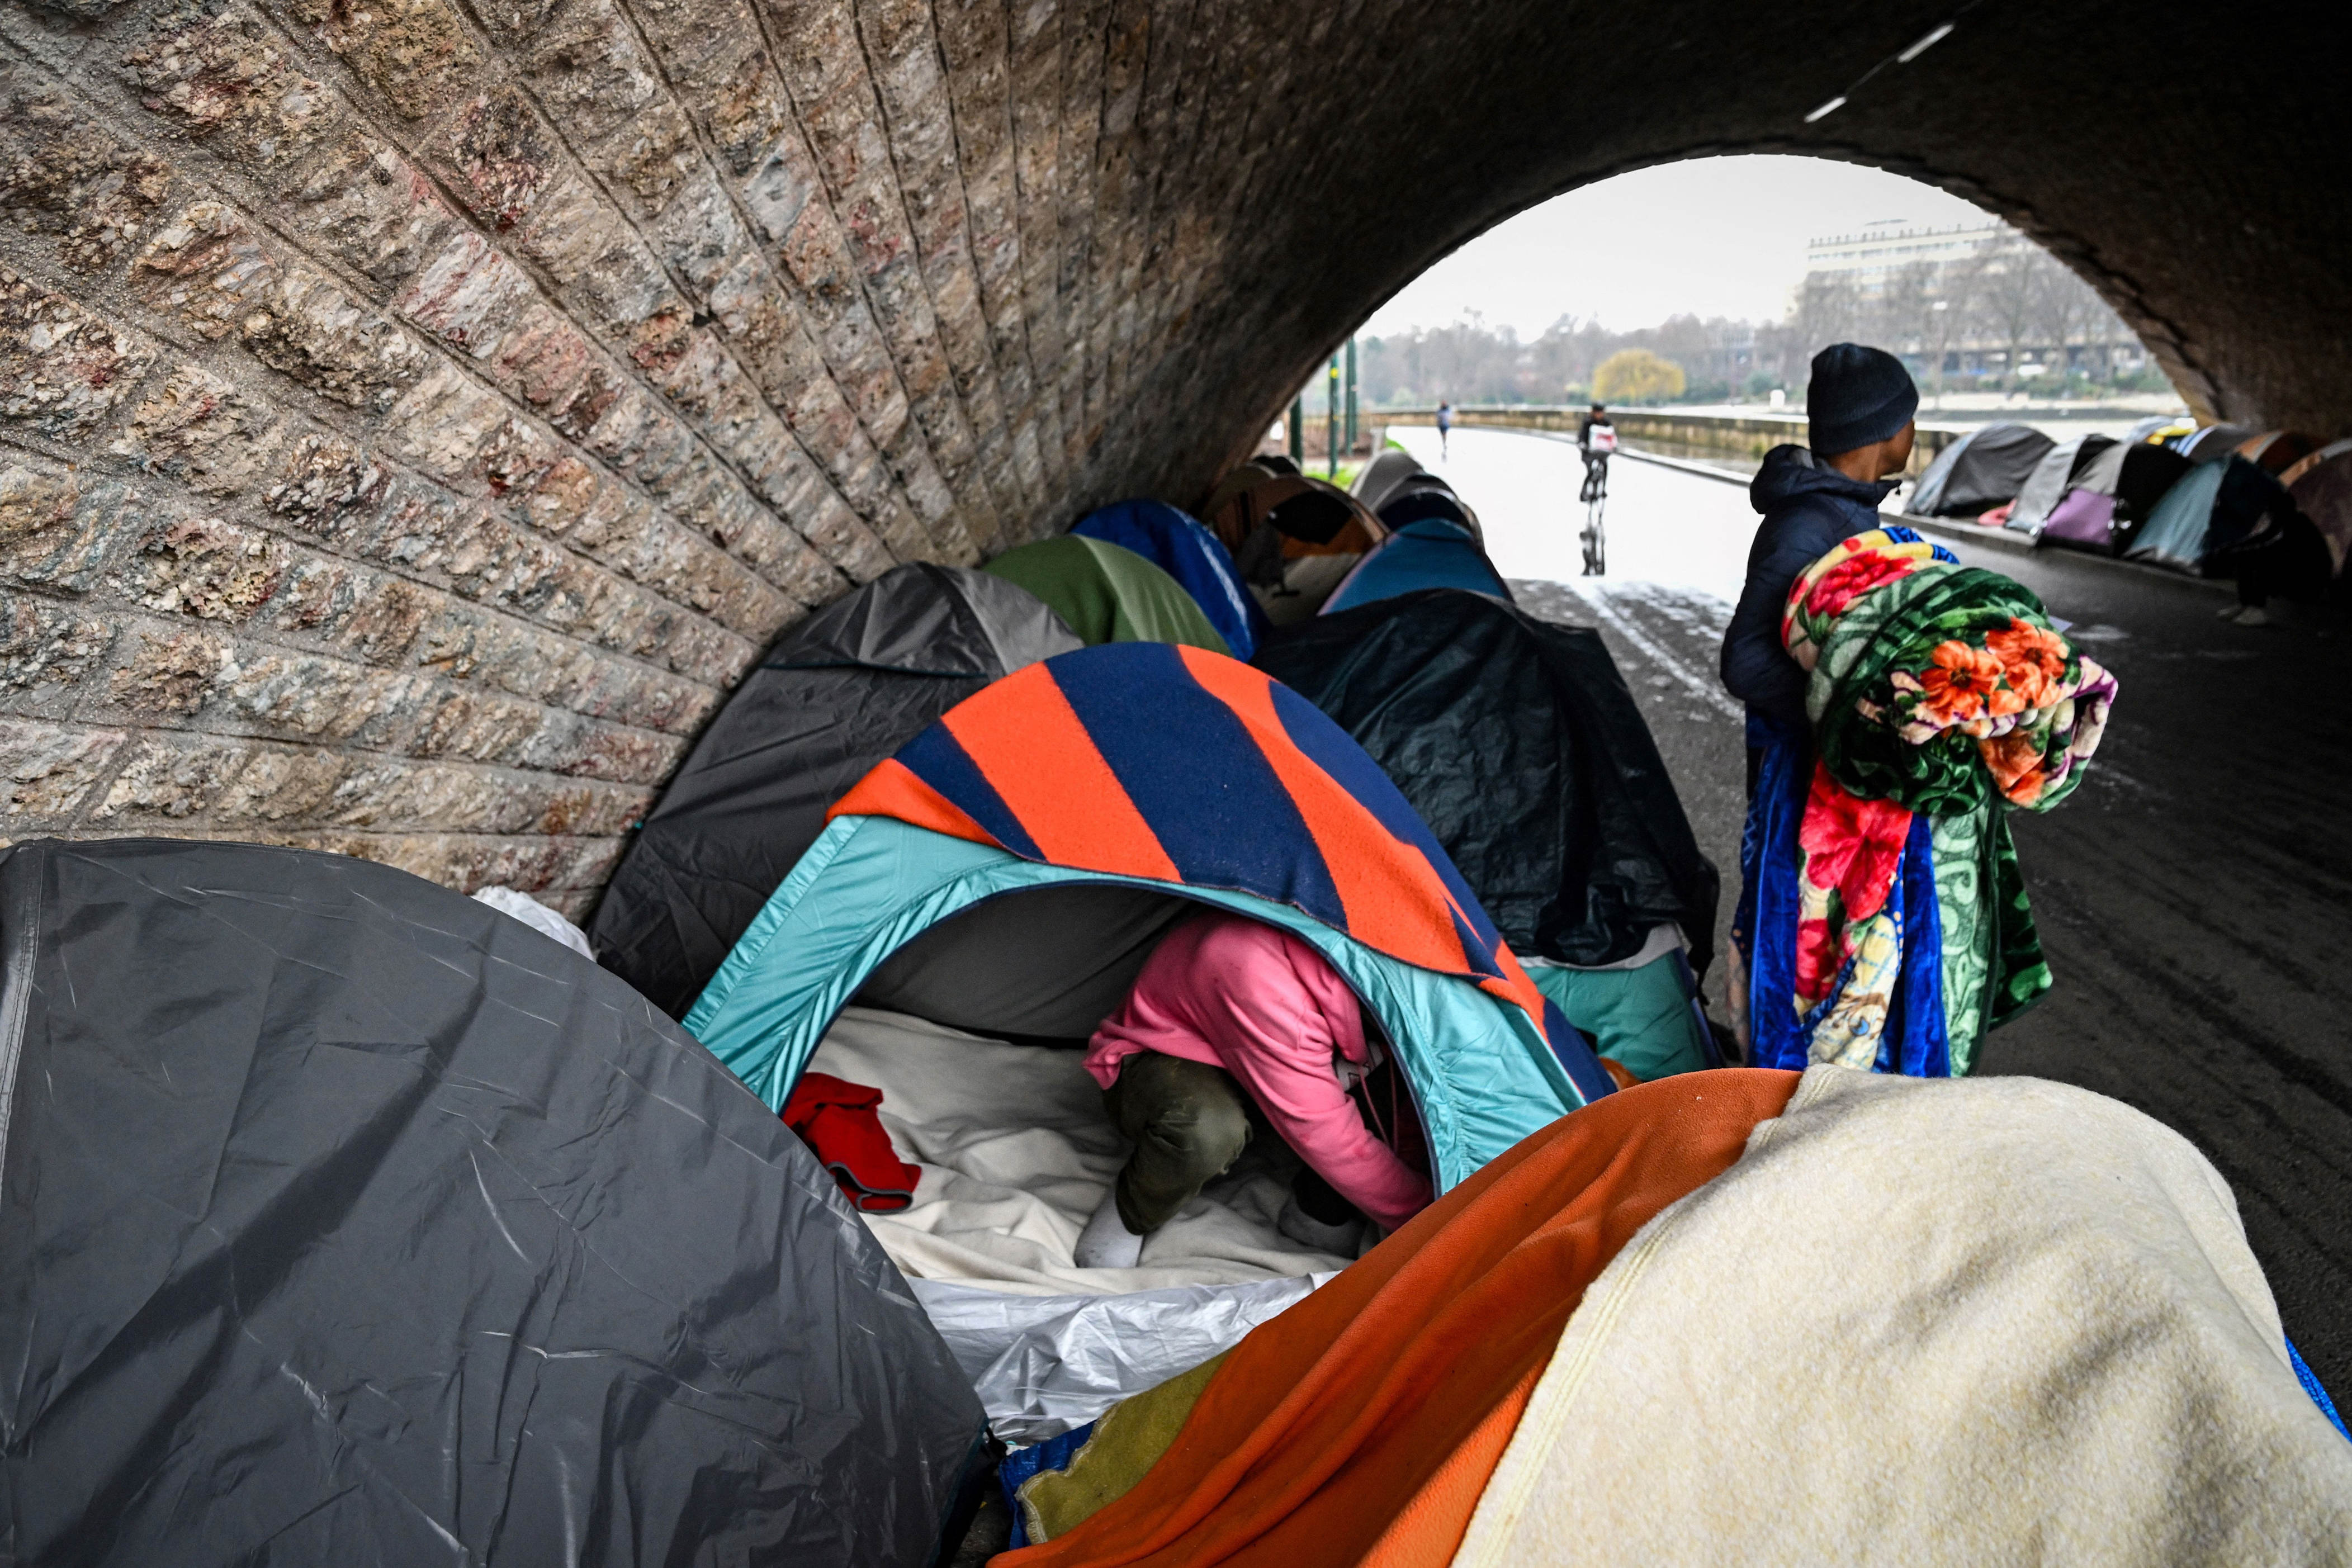 paris putzt sich für die olympischen spiele heraus – und verfrachtet obdachlose in die provinz